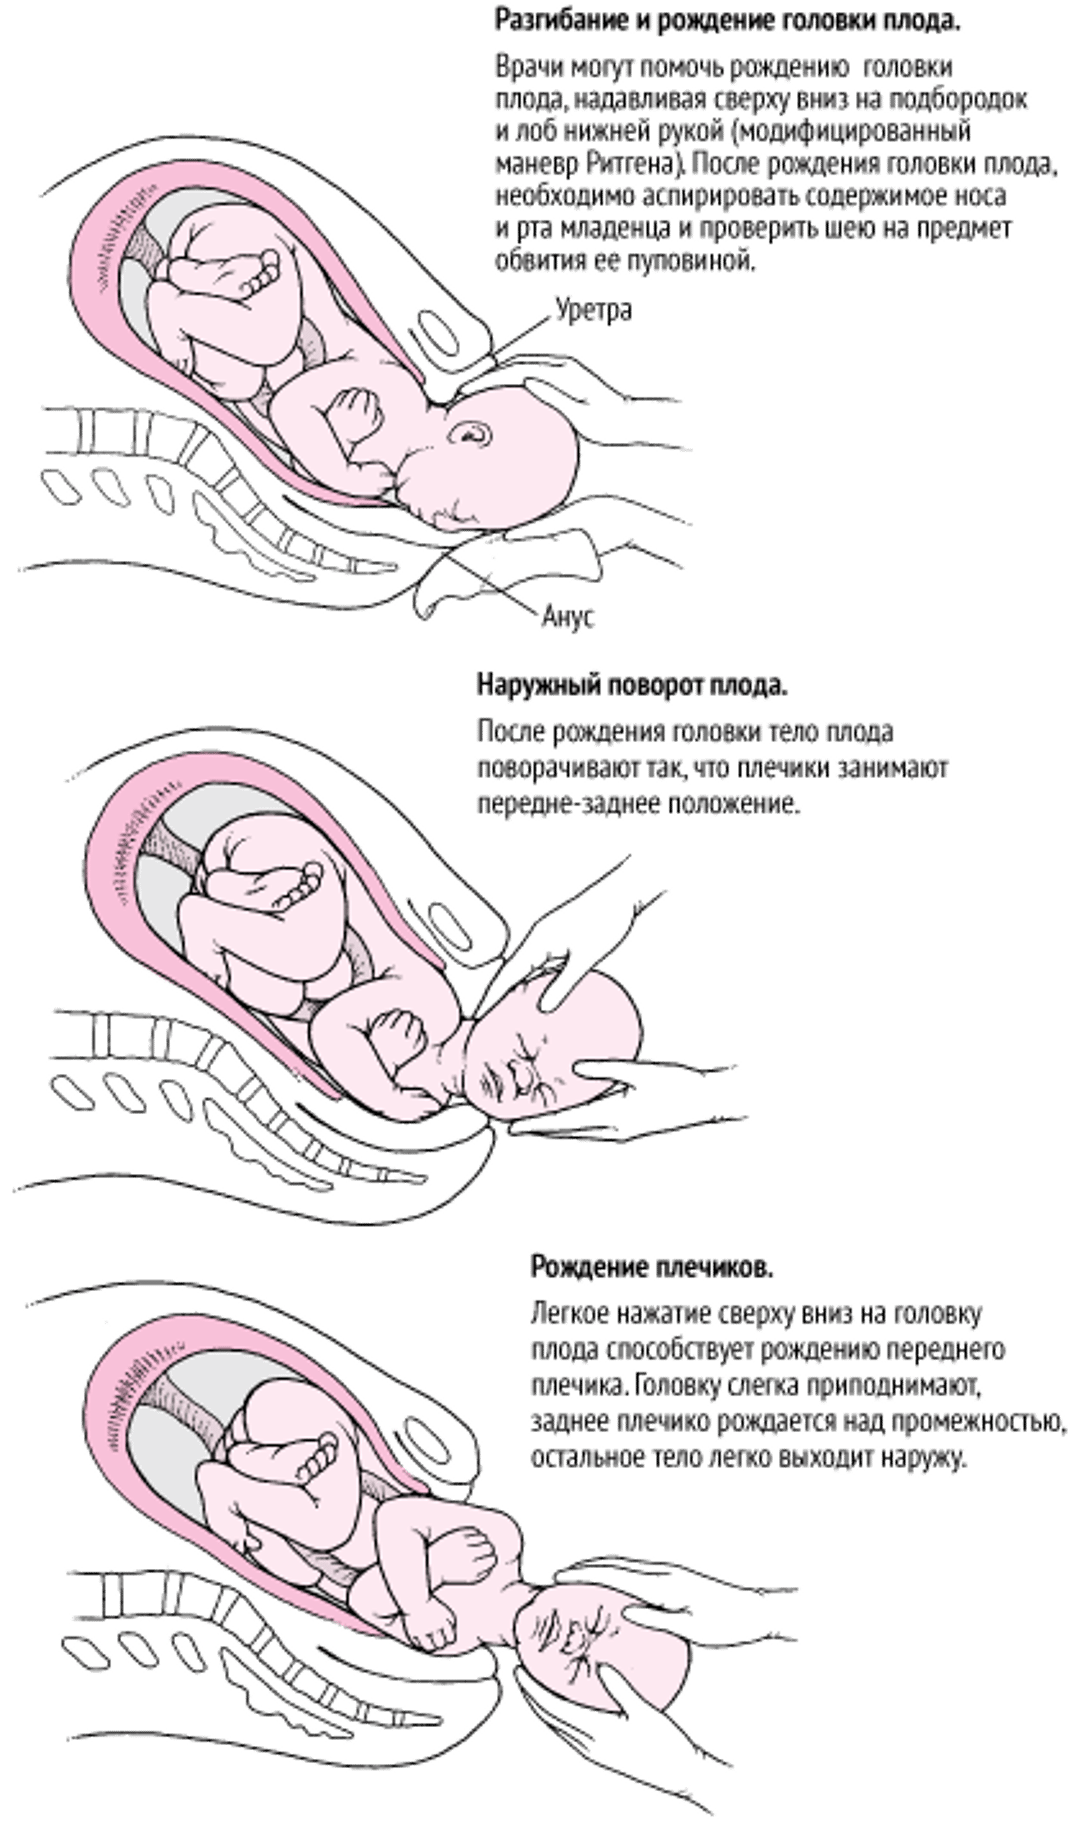 Последовательность событий при родах в затылочном предлежании